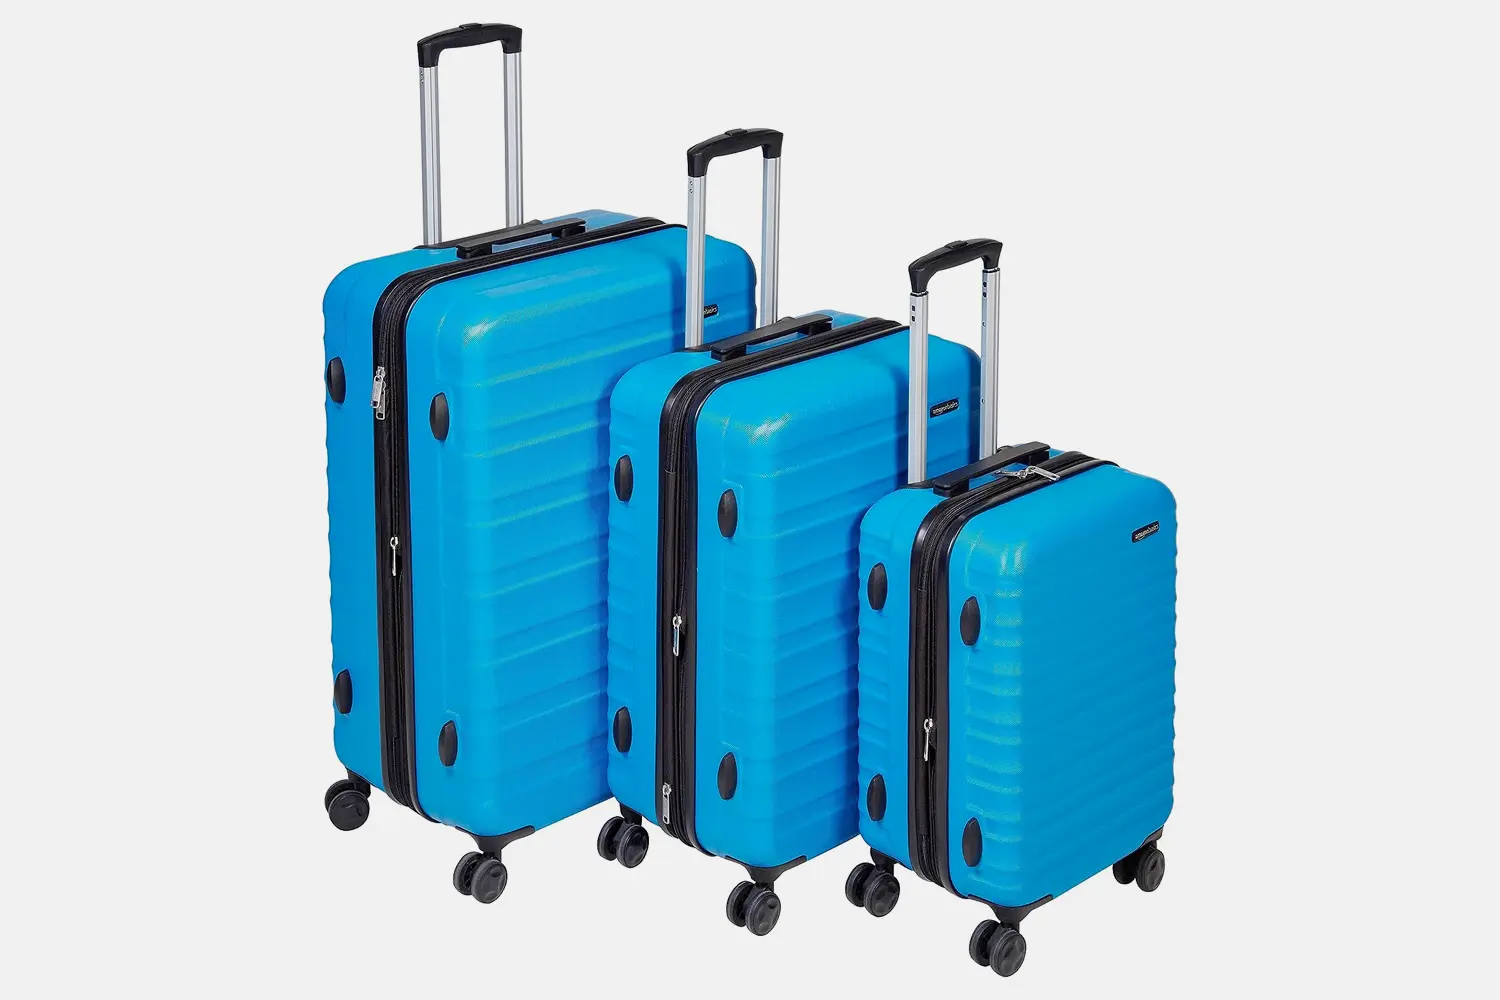 AmazonBasics Hardside Spinner Luggage Set – 3 Piece